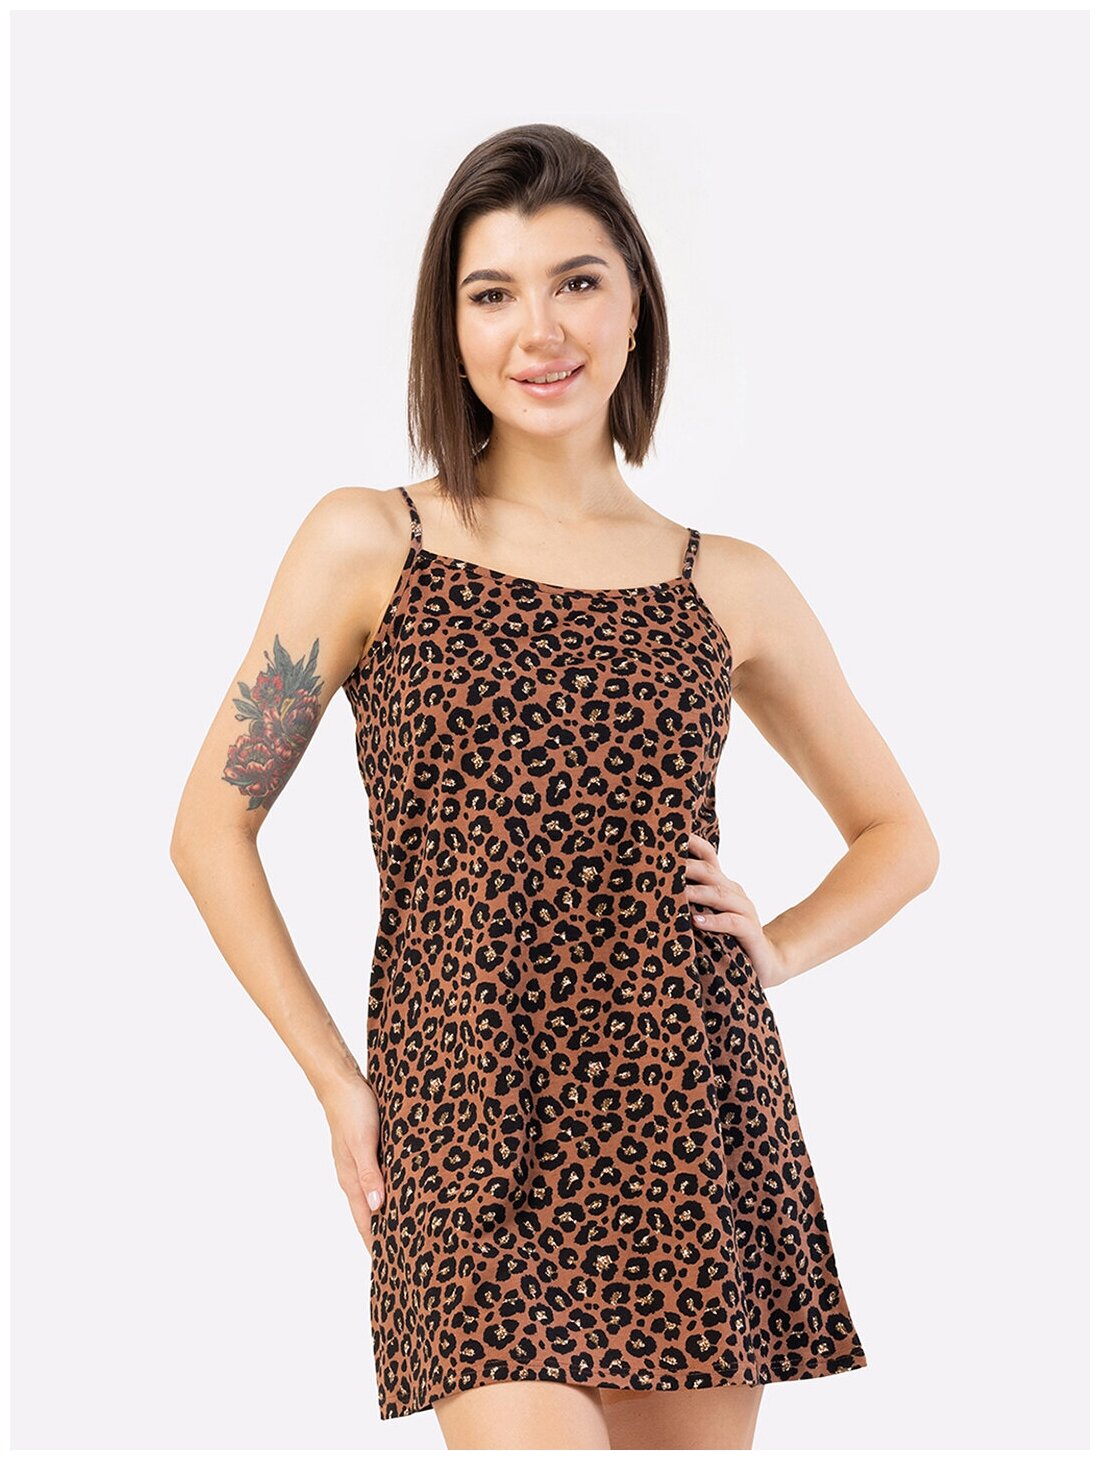 Сорочка женская HappyFox, HF3000MSP размер 50, цвет леопард - фотография № 1